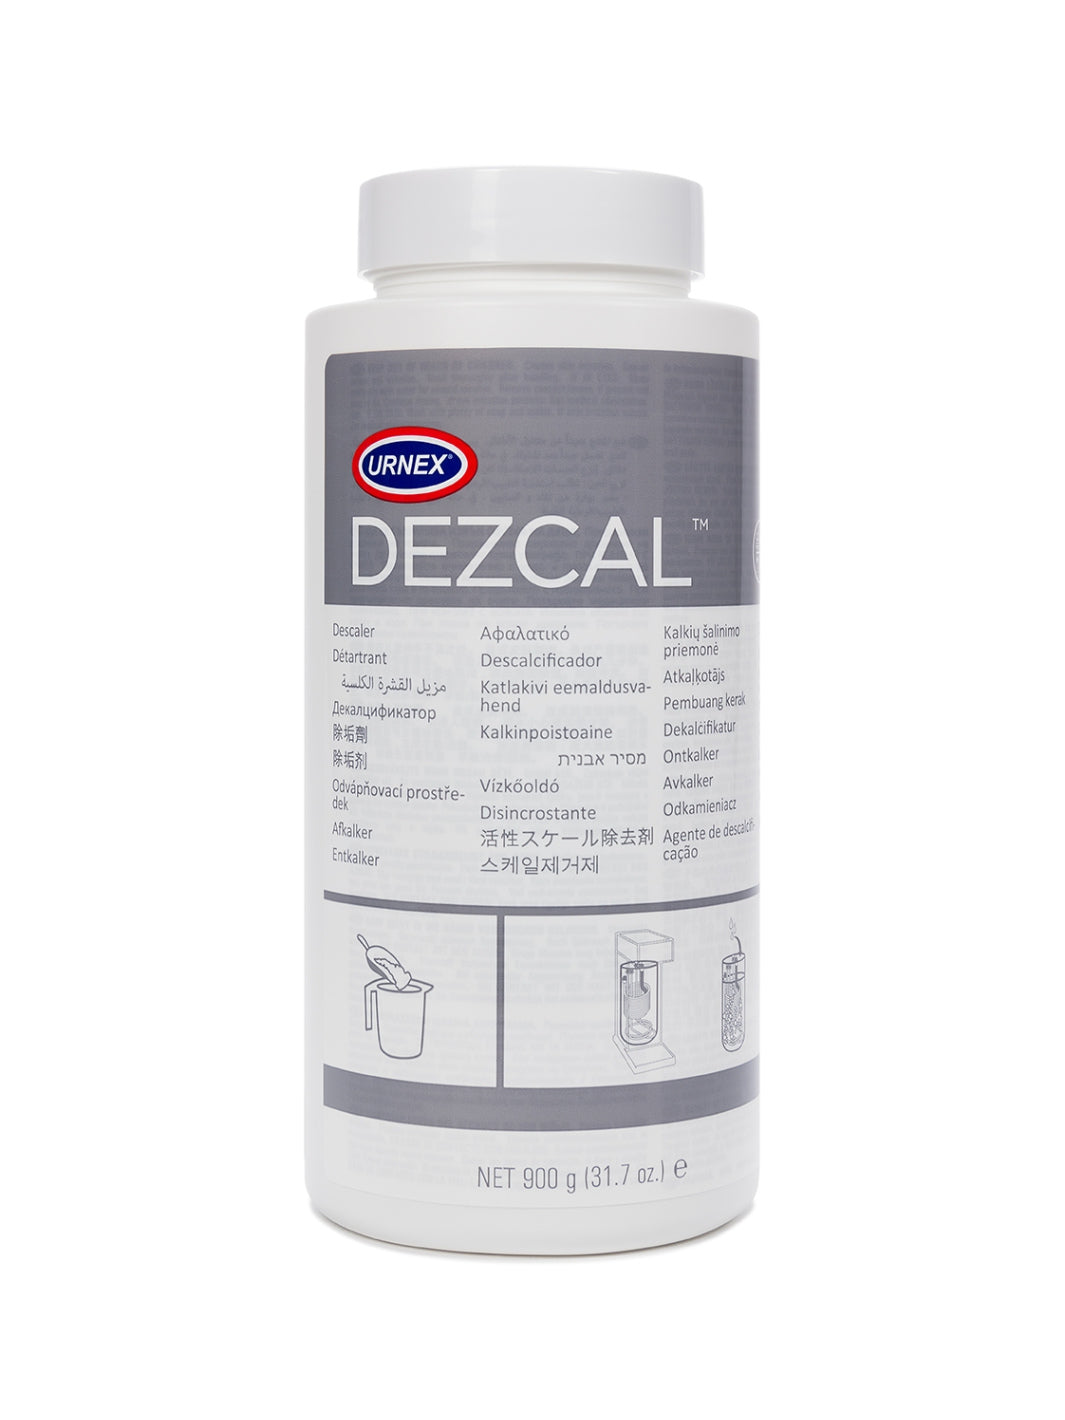 URNEX Dezcal Powder Jar (900g/31.7oz)